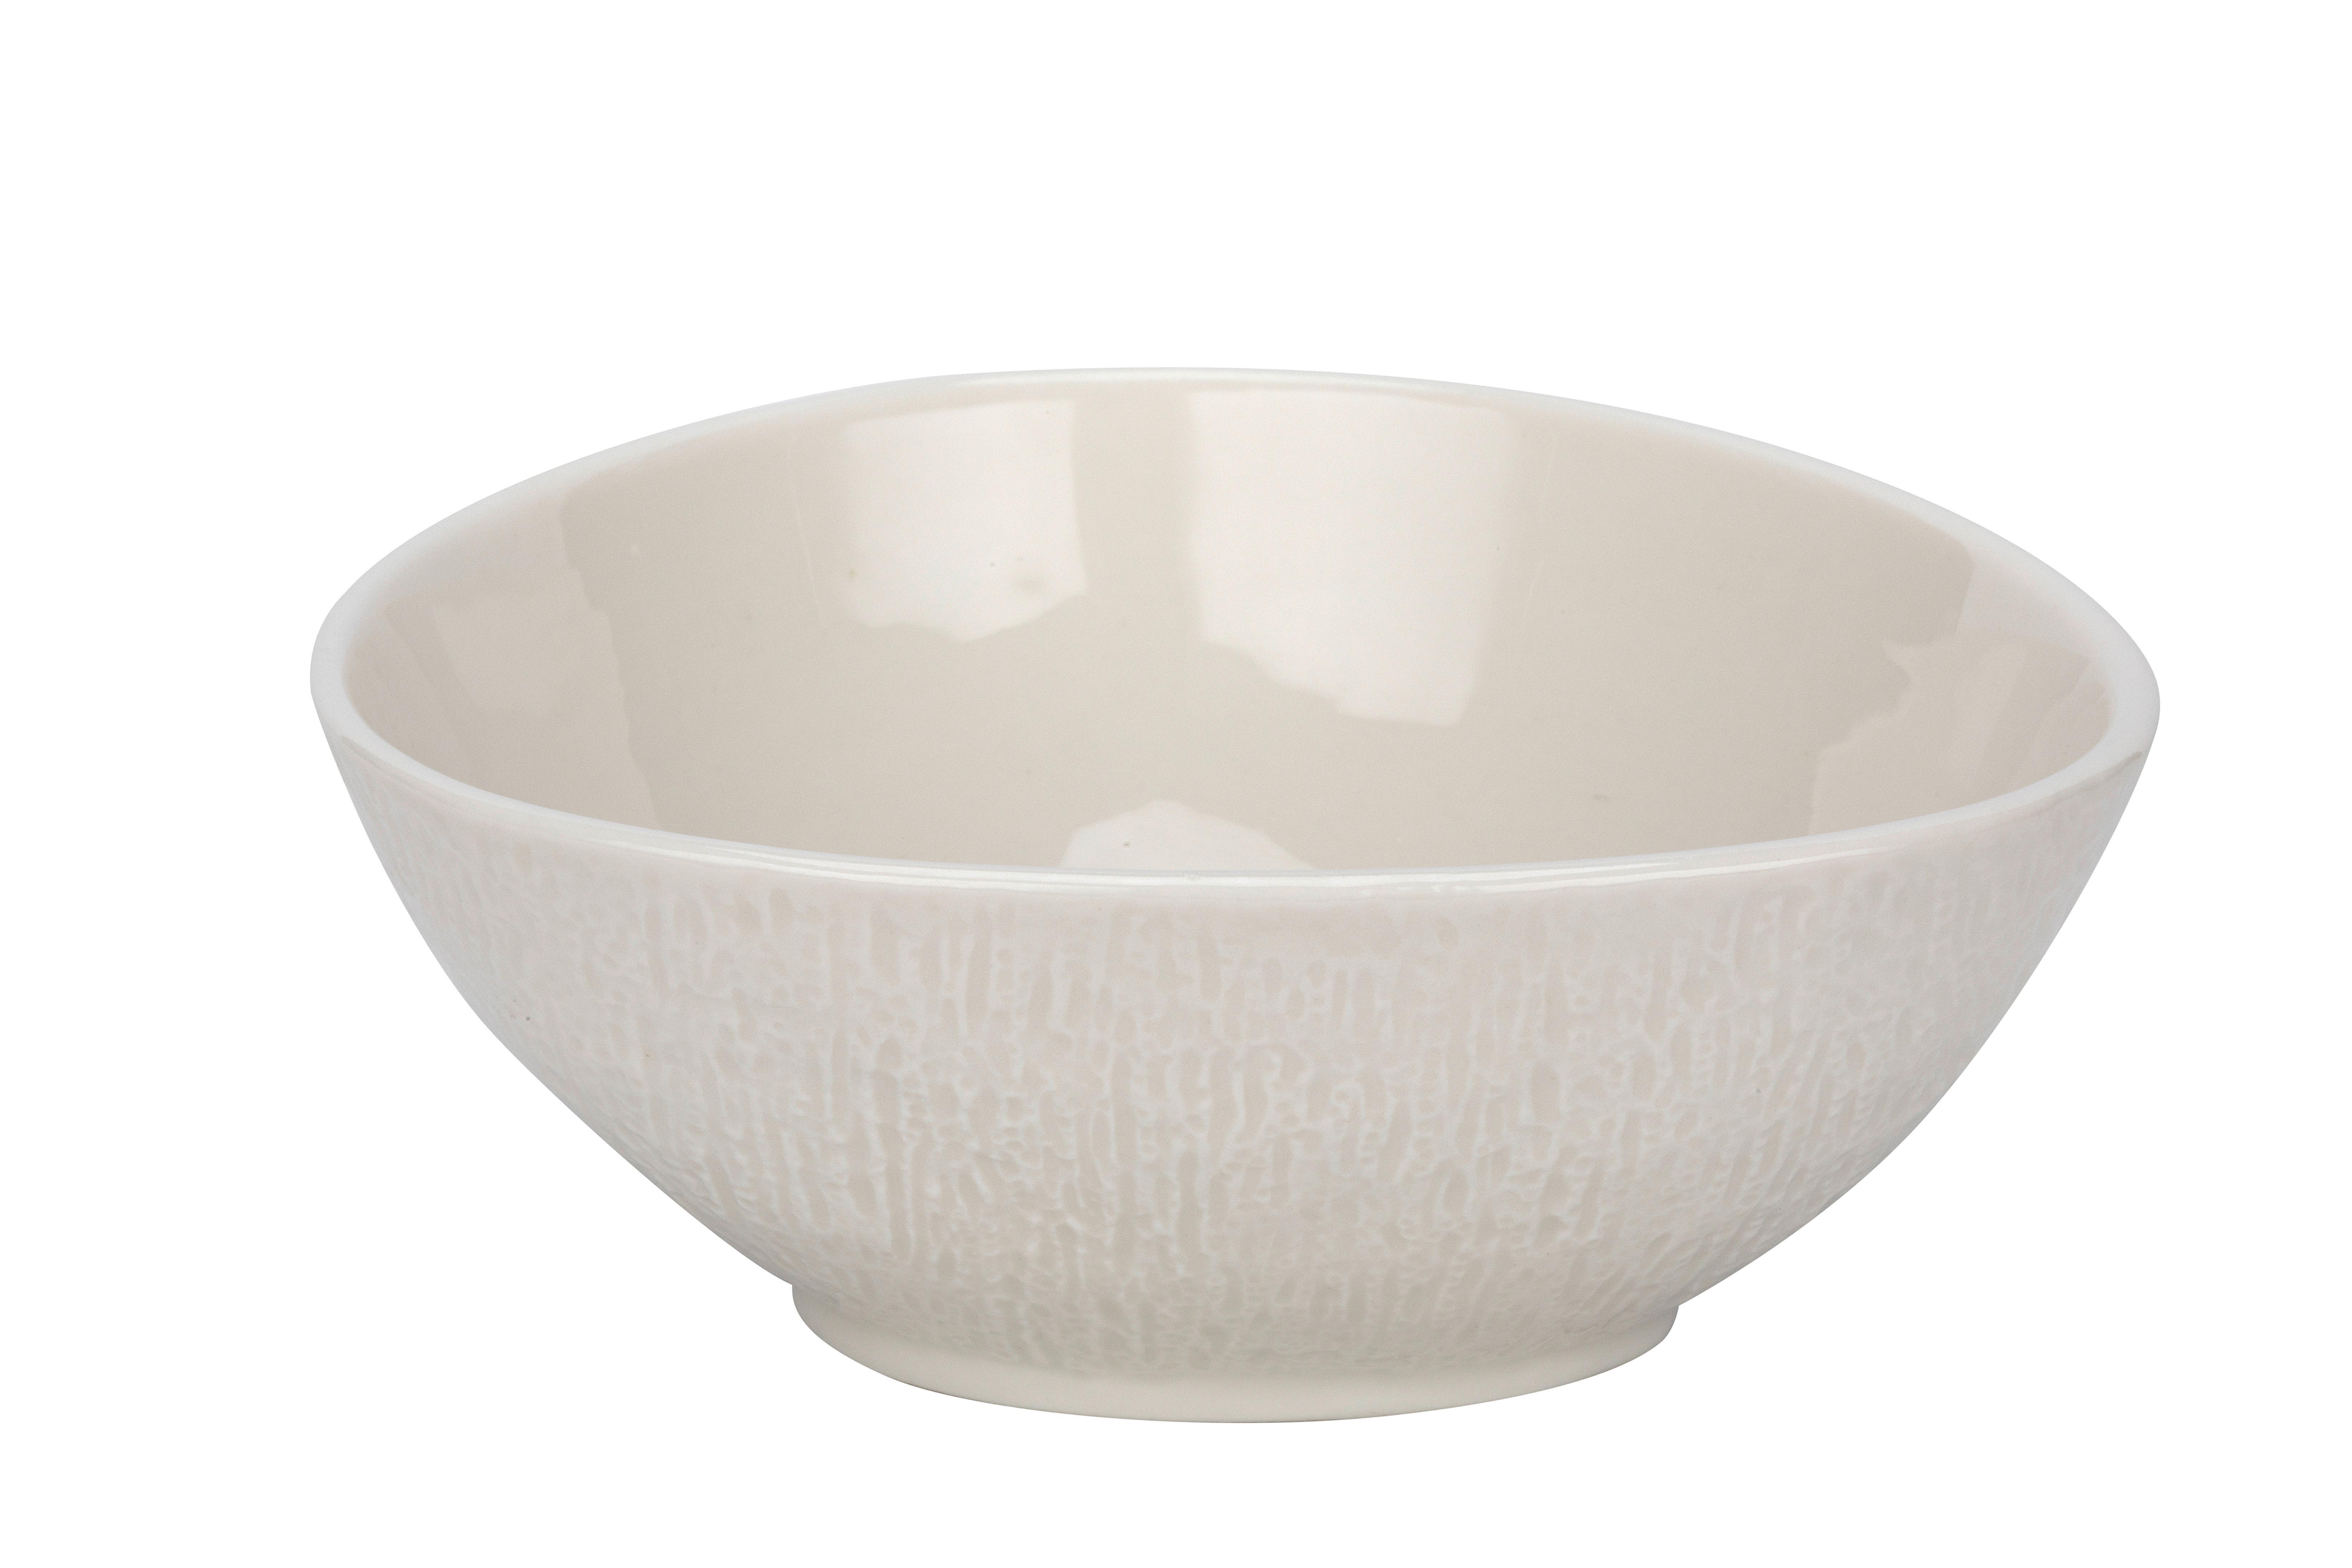 Miska Na Müsli Haruki - bílá, Moderní, keramika (19/17,1/6,8cm) - Premium Living